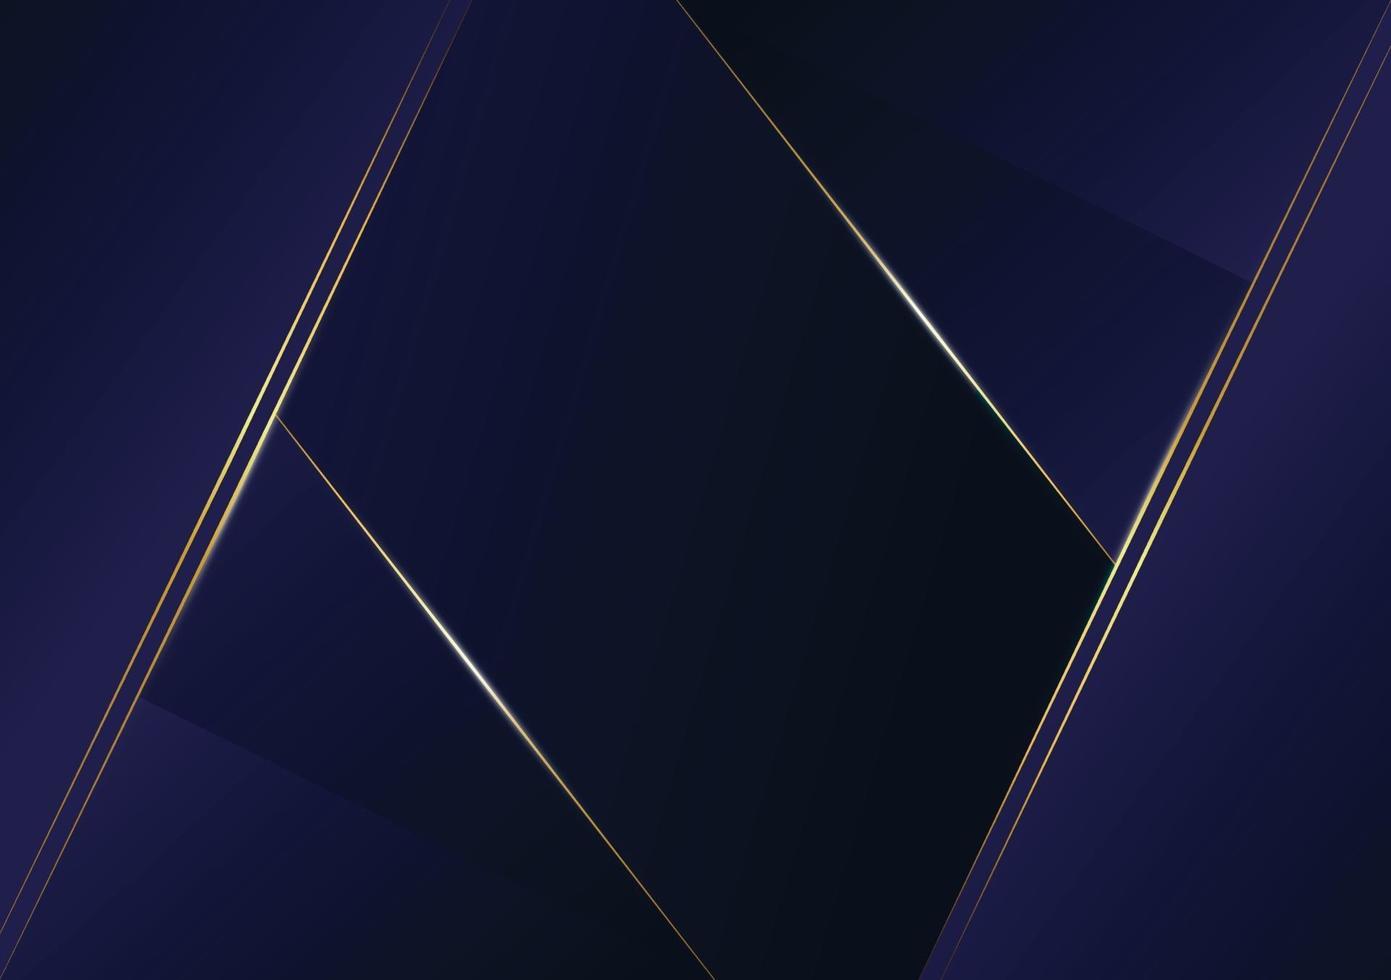 Luxus goldene Linie des abstrakten polygonalen Musters mit dunkelblauem Schablonenhintergrund. Premium-Stil für Poster, Cover, Print, Artwork. Vektorillustration vektor